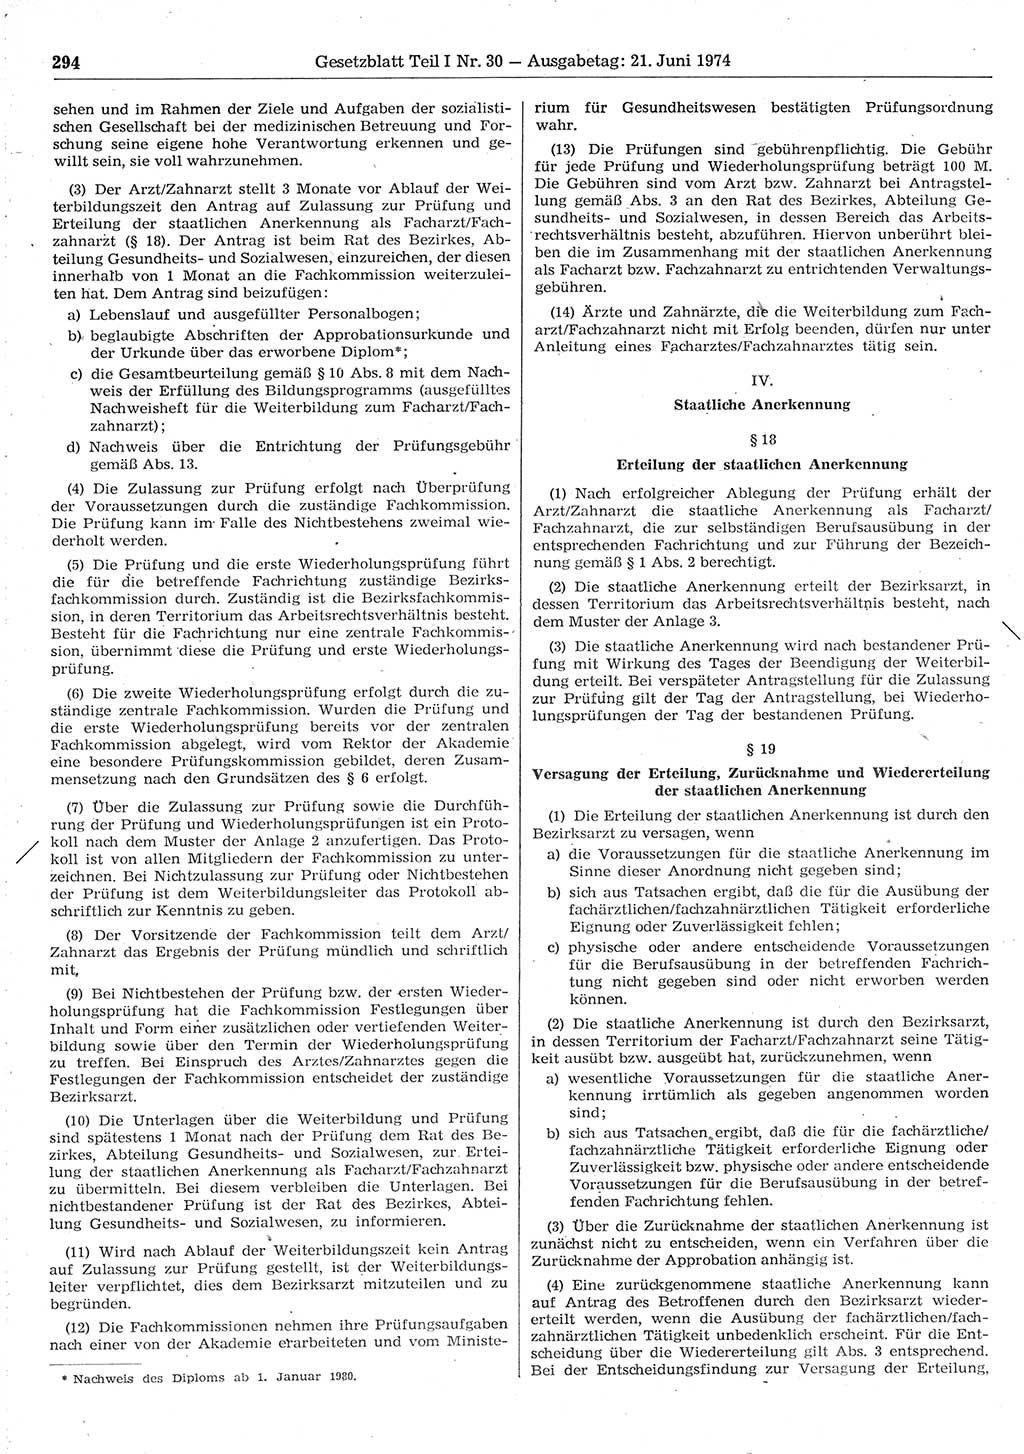 Gesetzblatt (GBl.) der Deutschen Demokratischen Republik (DDR) Teil Ⅰ 1974, Seite 294 (GBl. DDR Ⅰ 1974, S. 294)